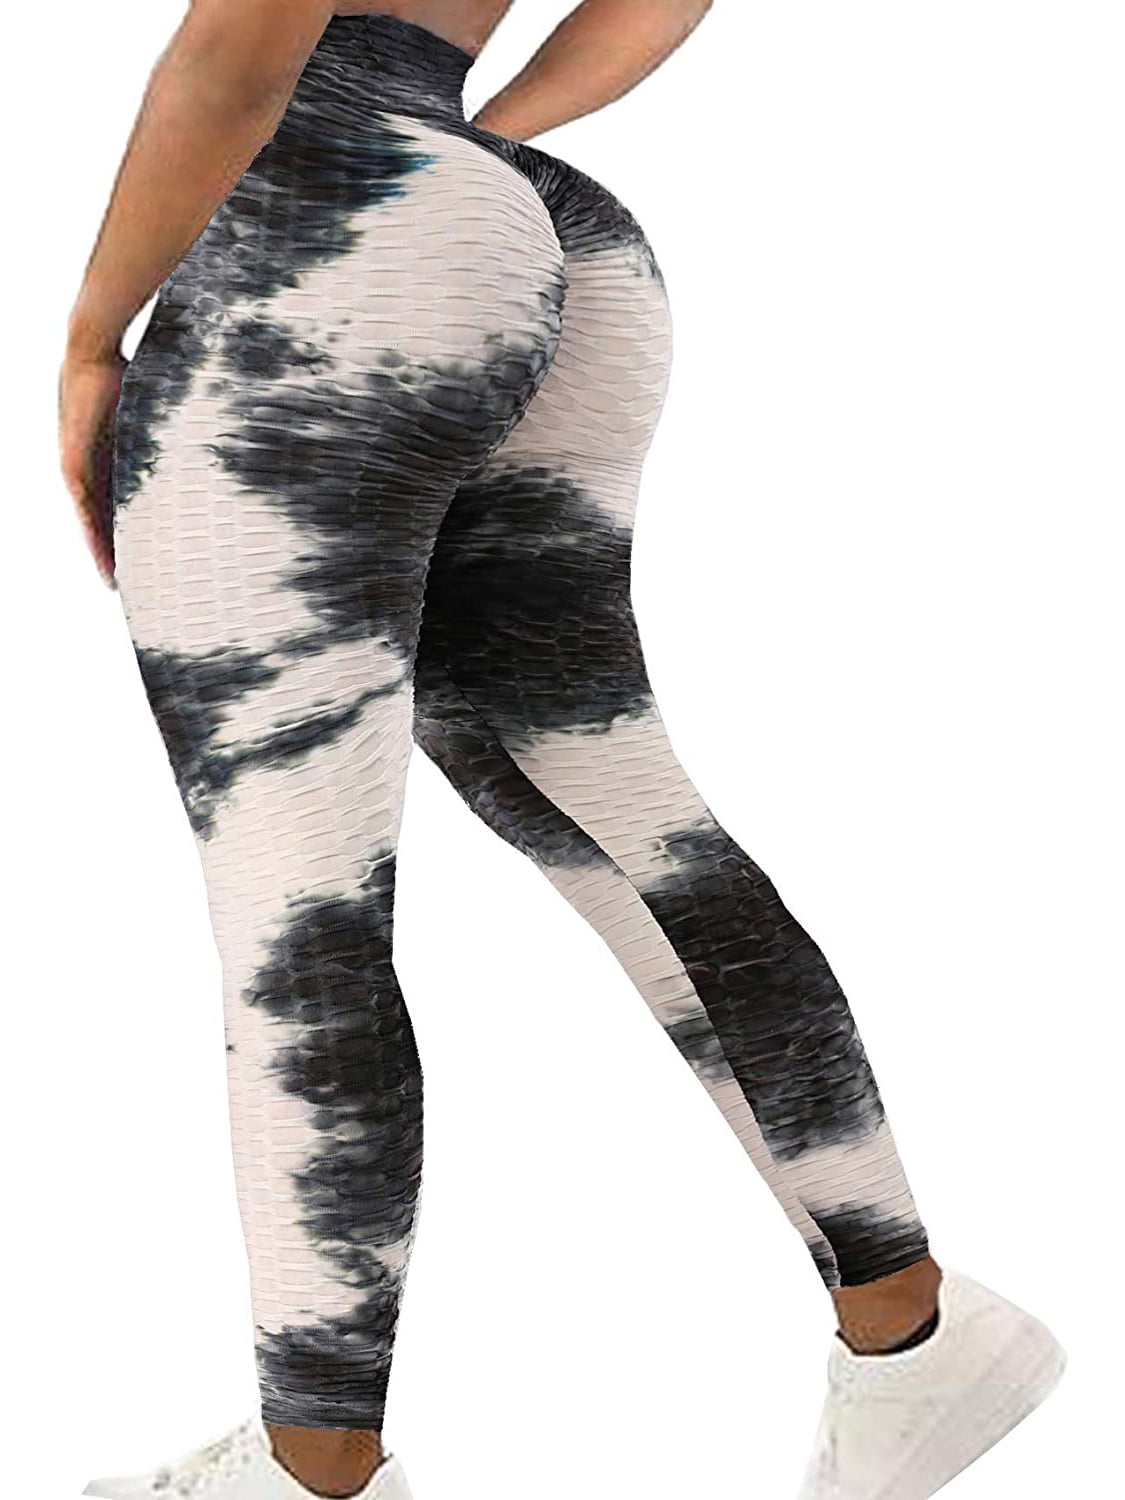 Big ass in transparent leggings  Latina Fat Ass in Yoga Pants